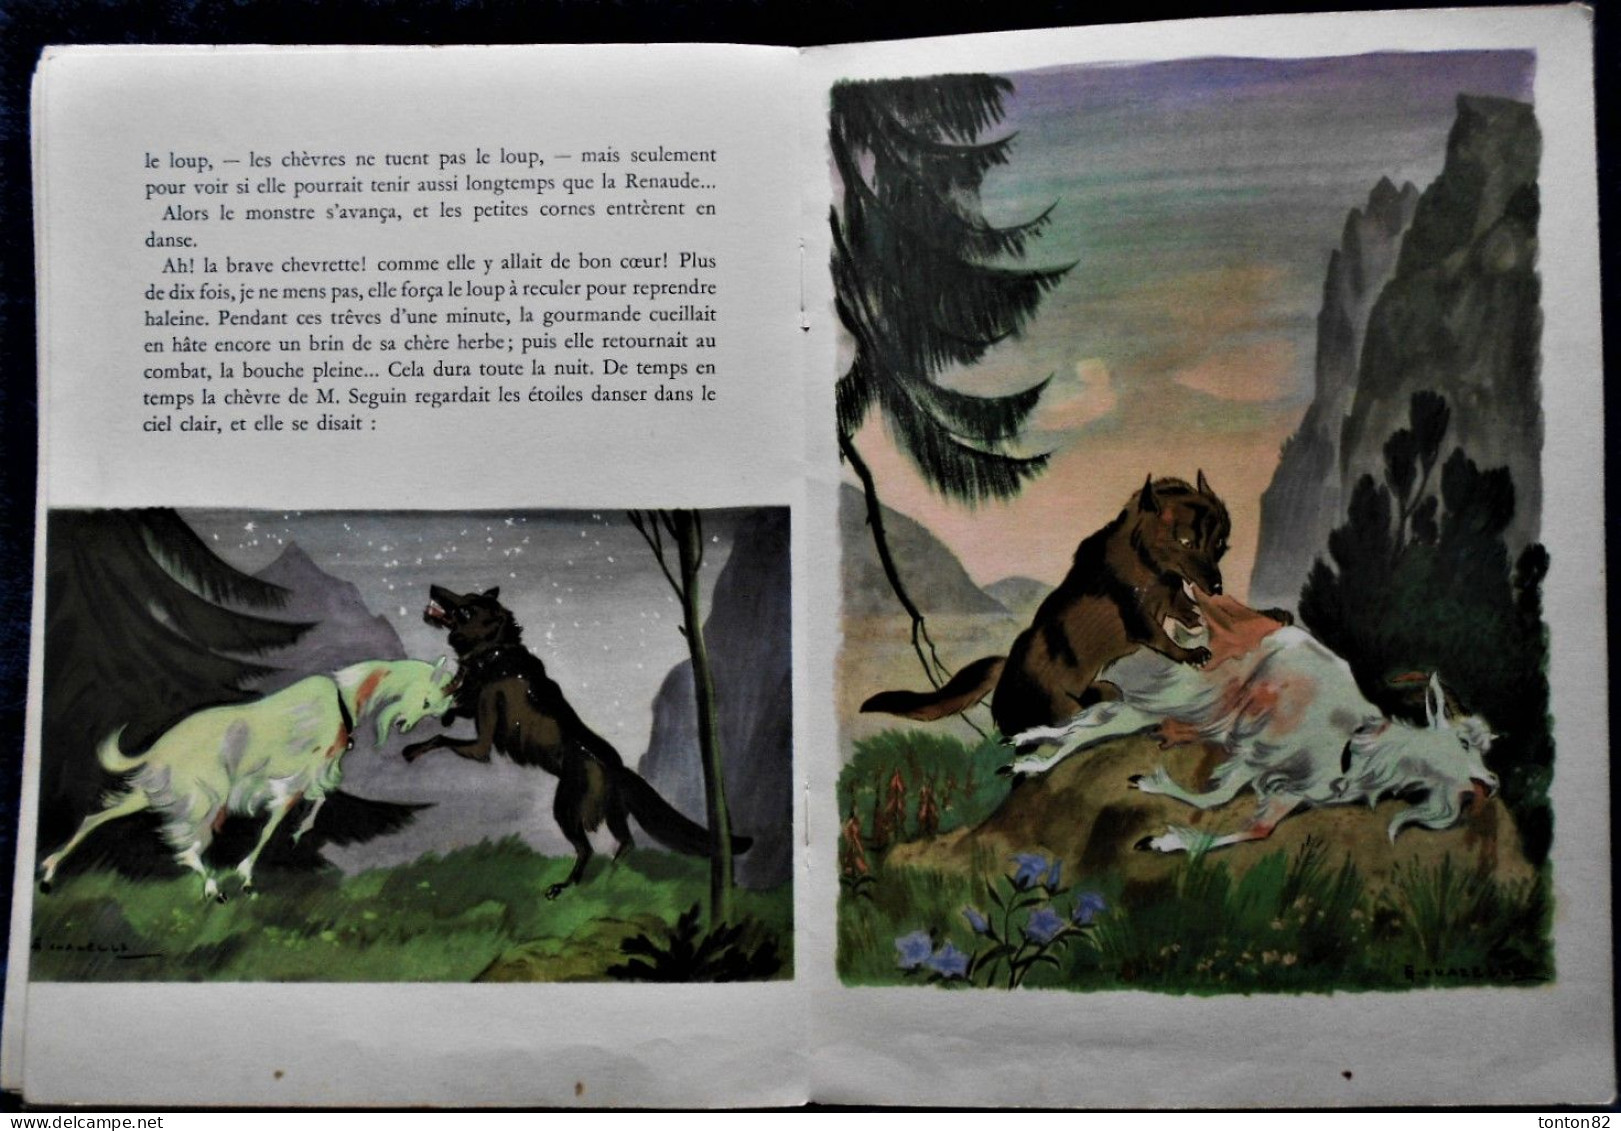 A. Daudet - La Chèvre de Monsieur Seguin - HACHETTE - Illustré par A. Chazelle - ( 1958 ) - Sans jaquette